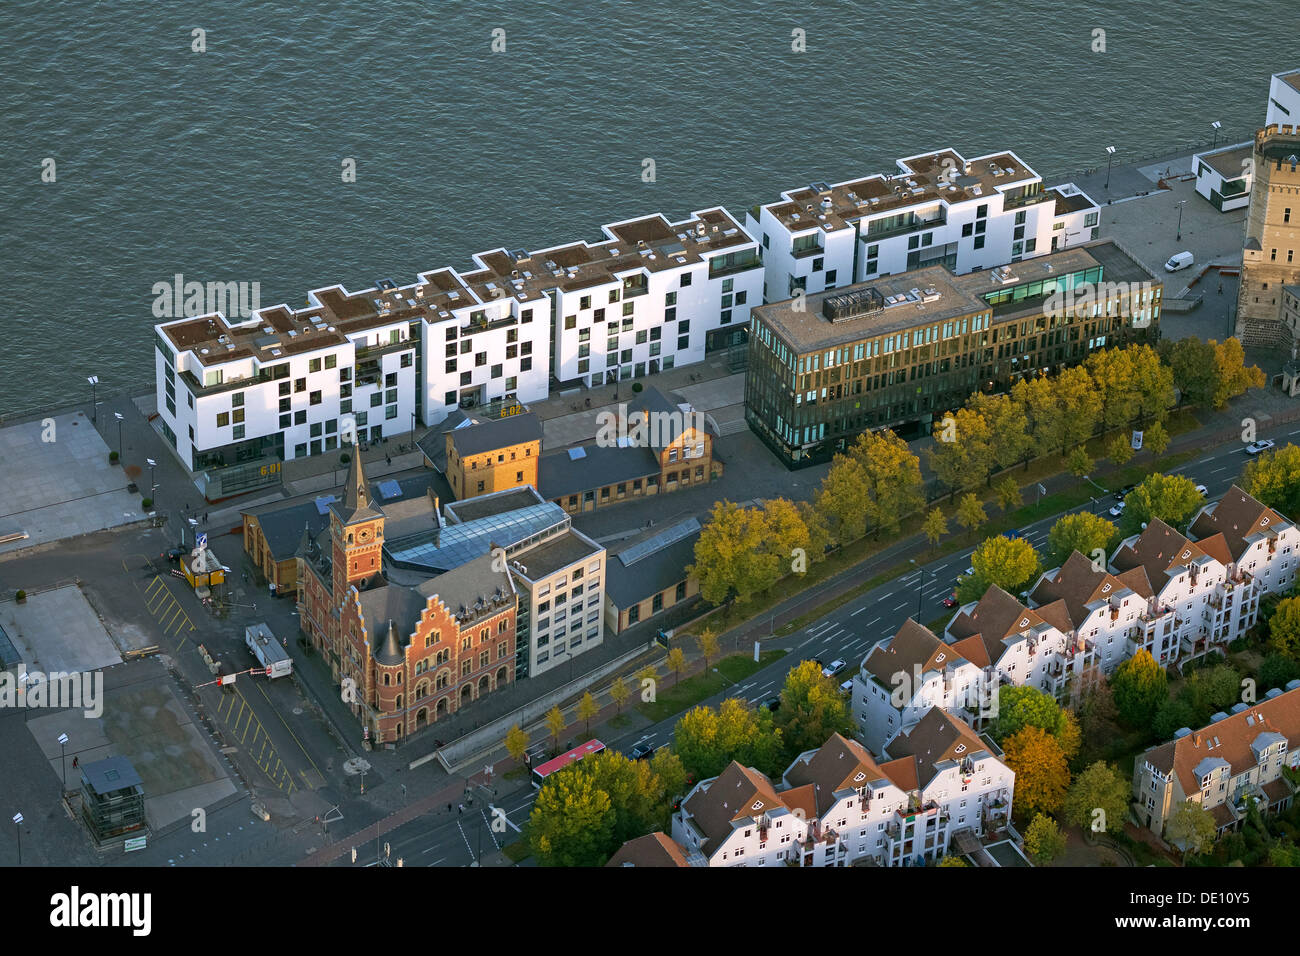 Vista aérea de la zona, Rheinauhafen, un proyecto de regeneración urbana Foto de stock